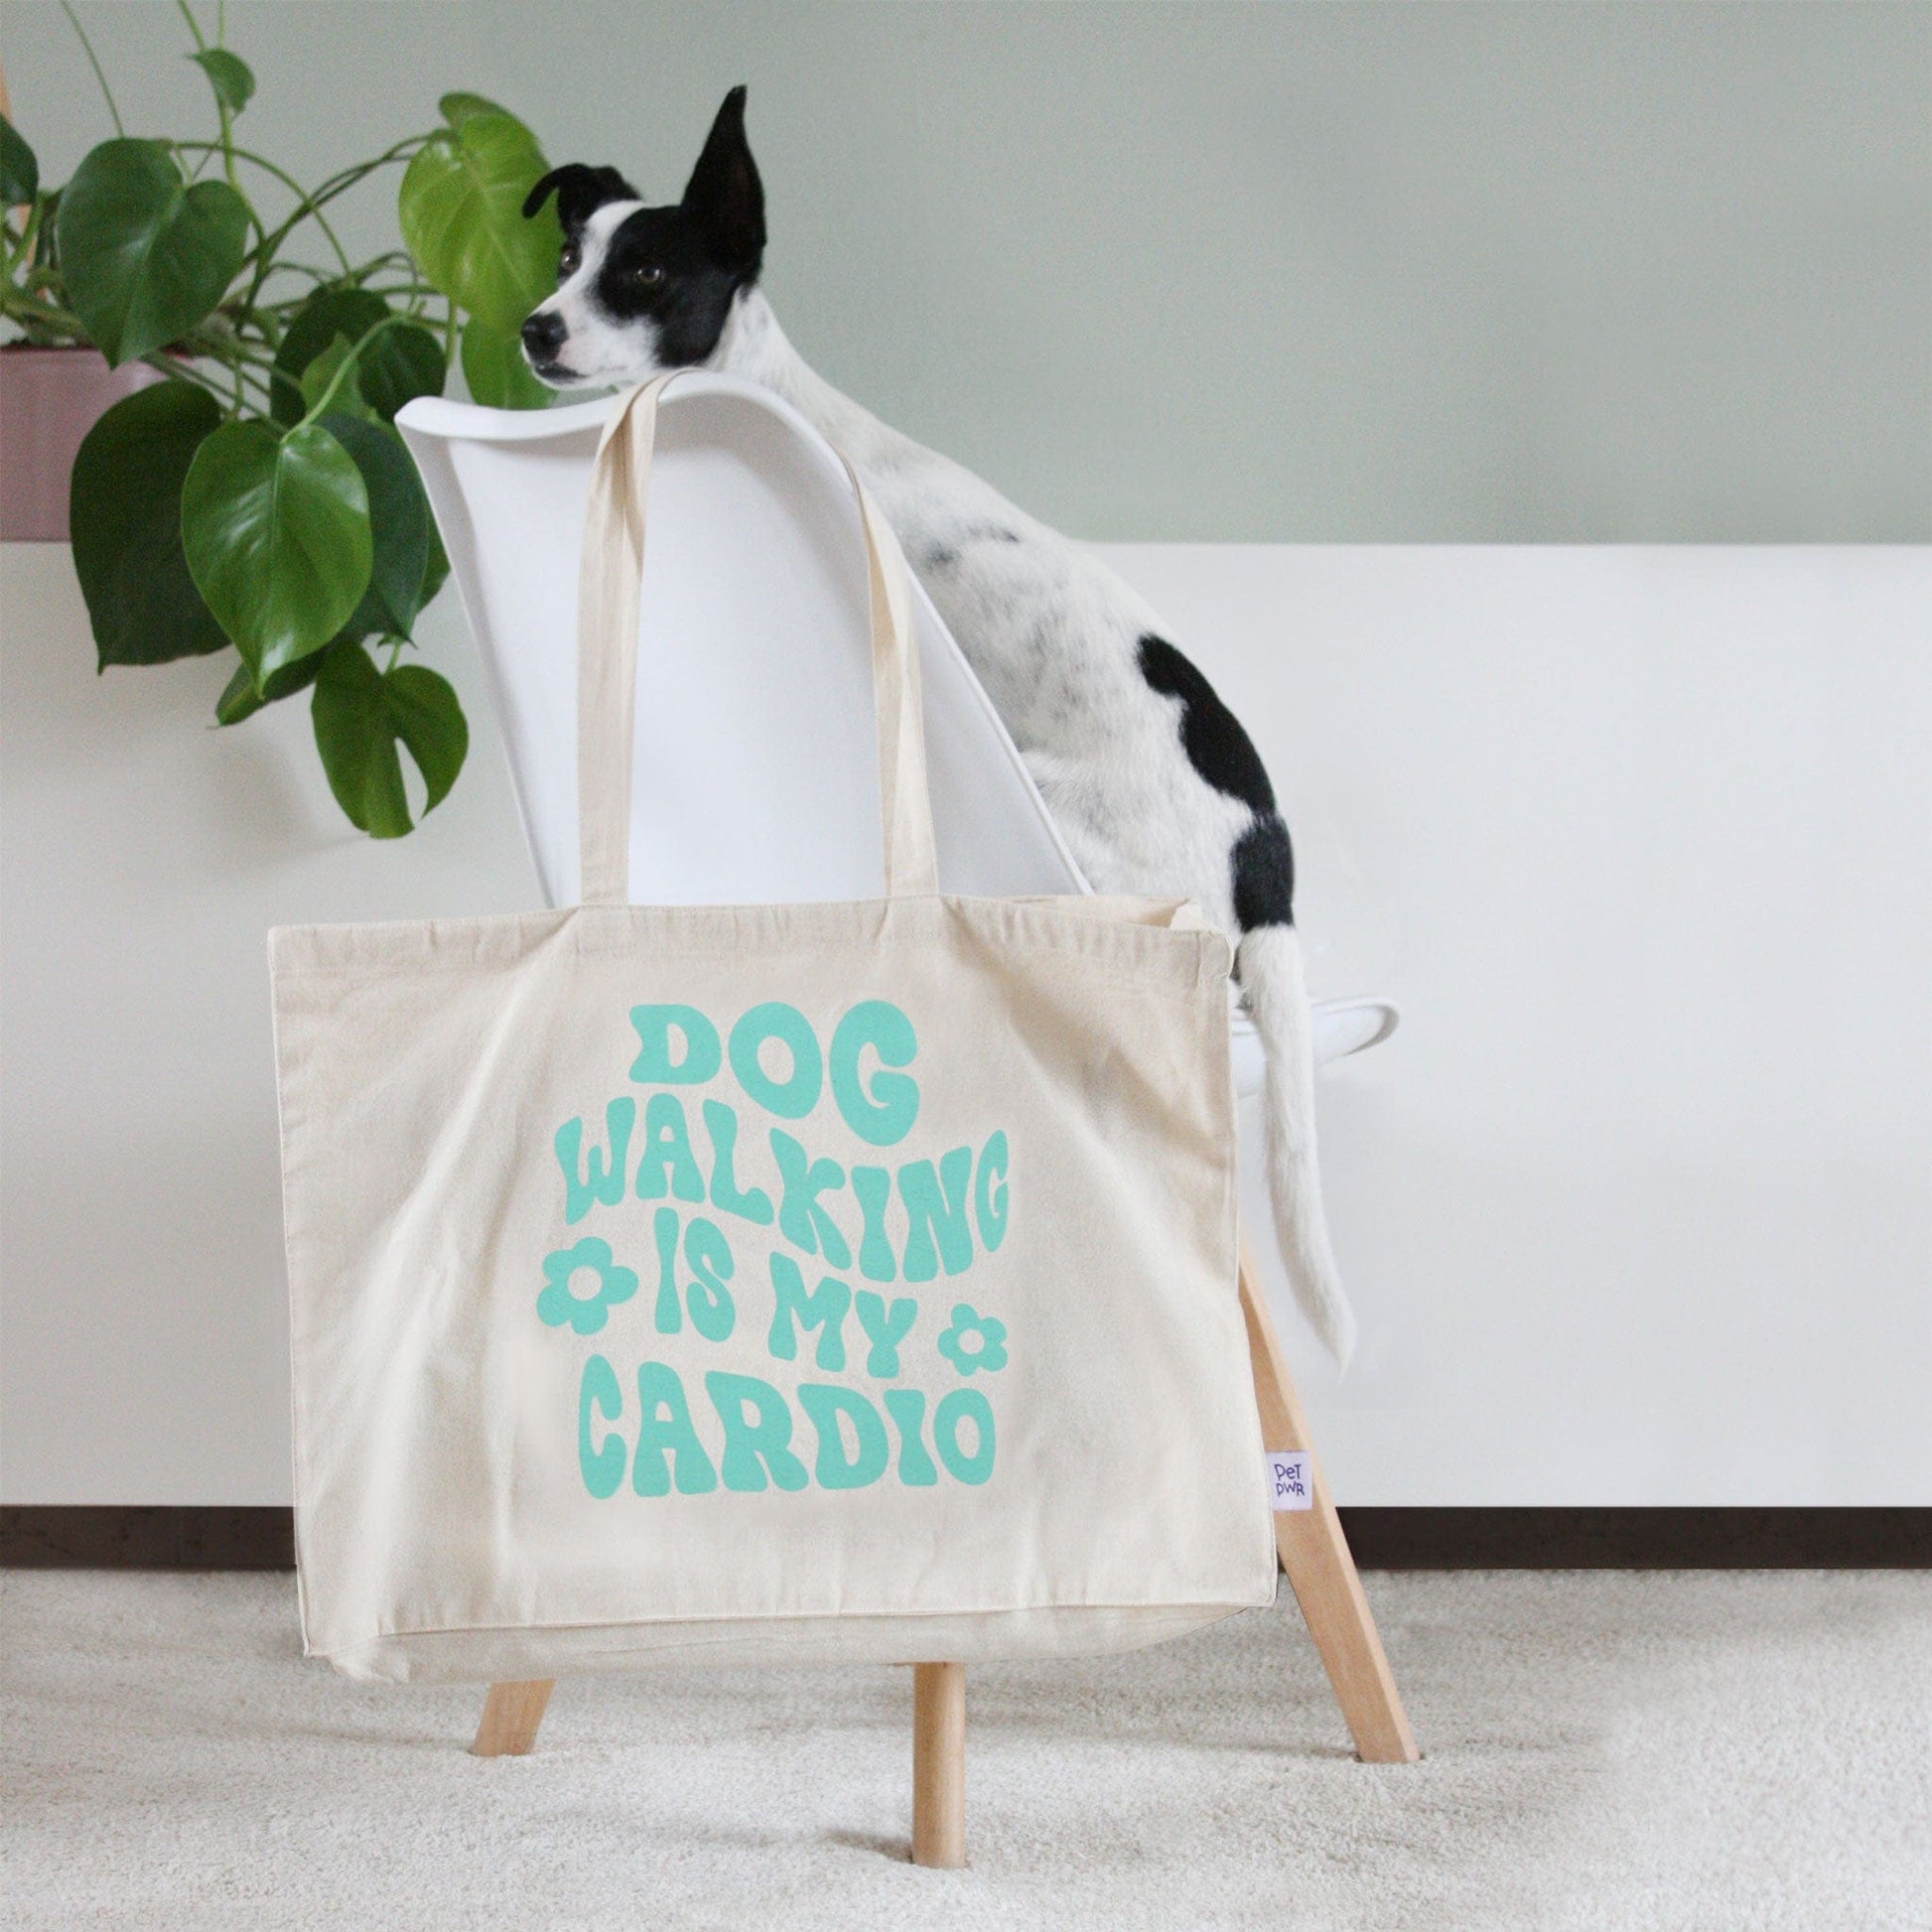 Maxi bag "Dog walking is my cardio" 🐶